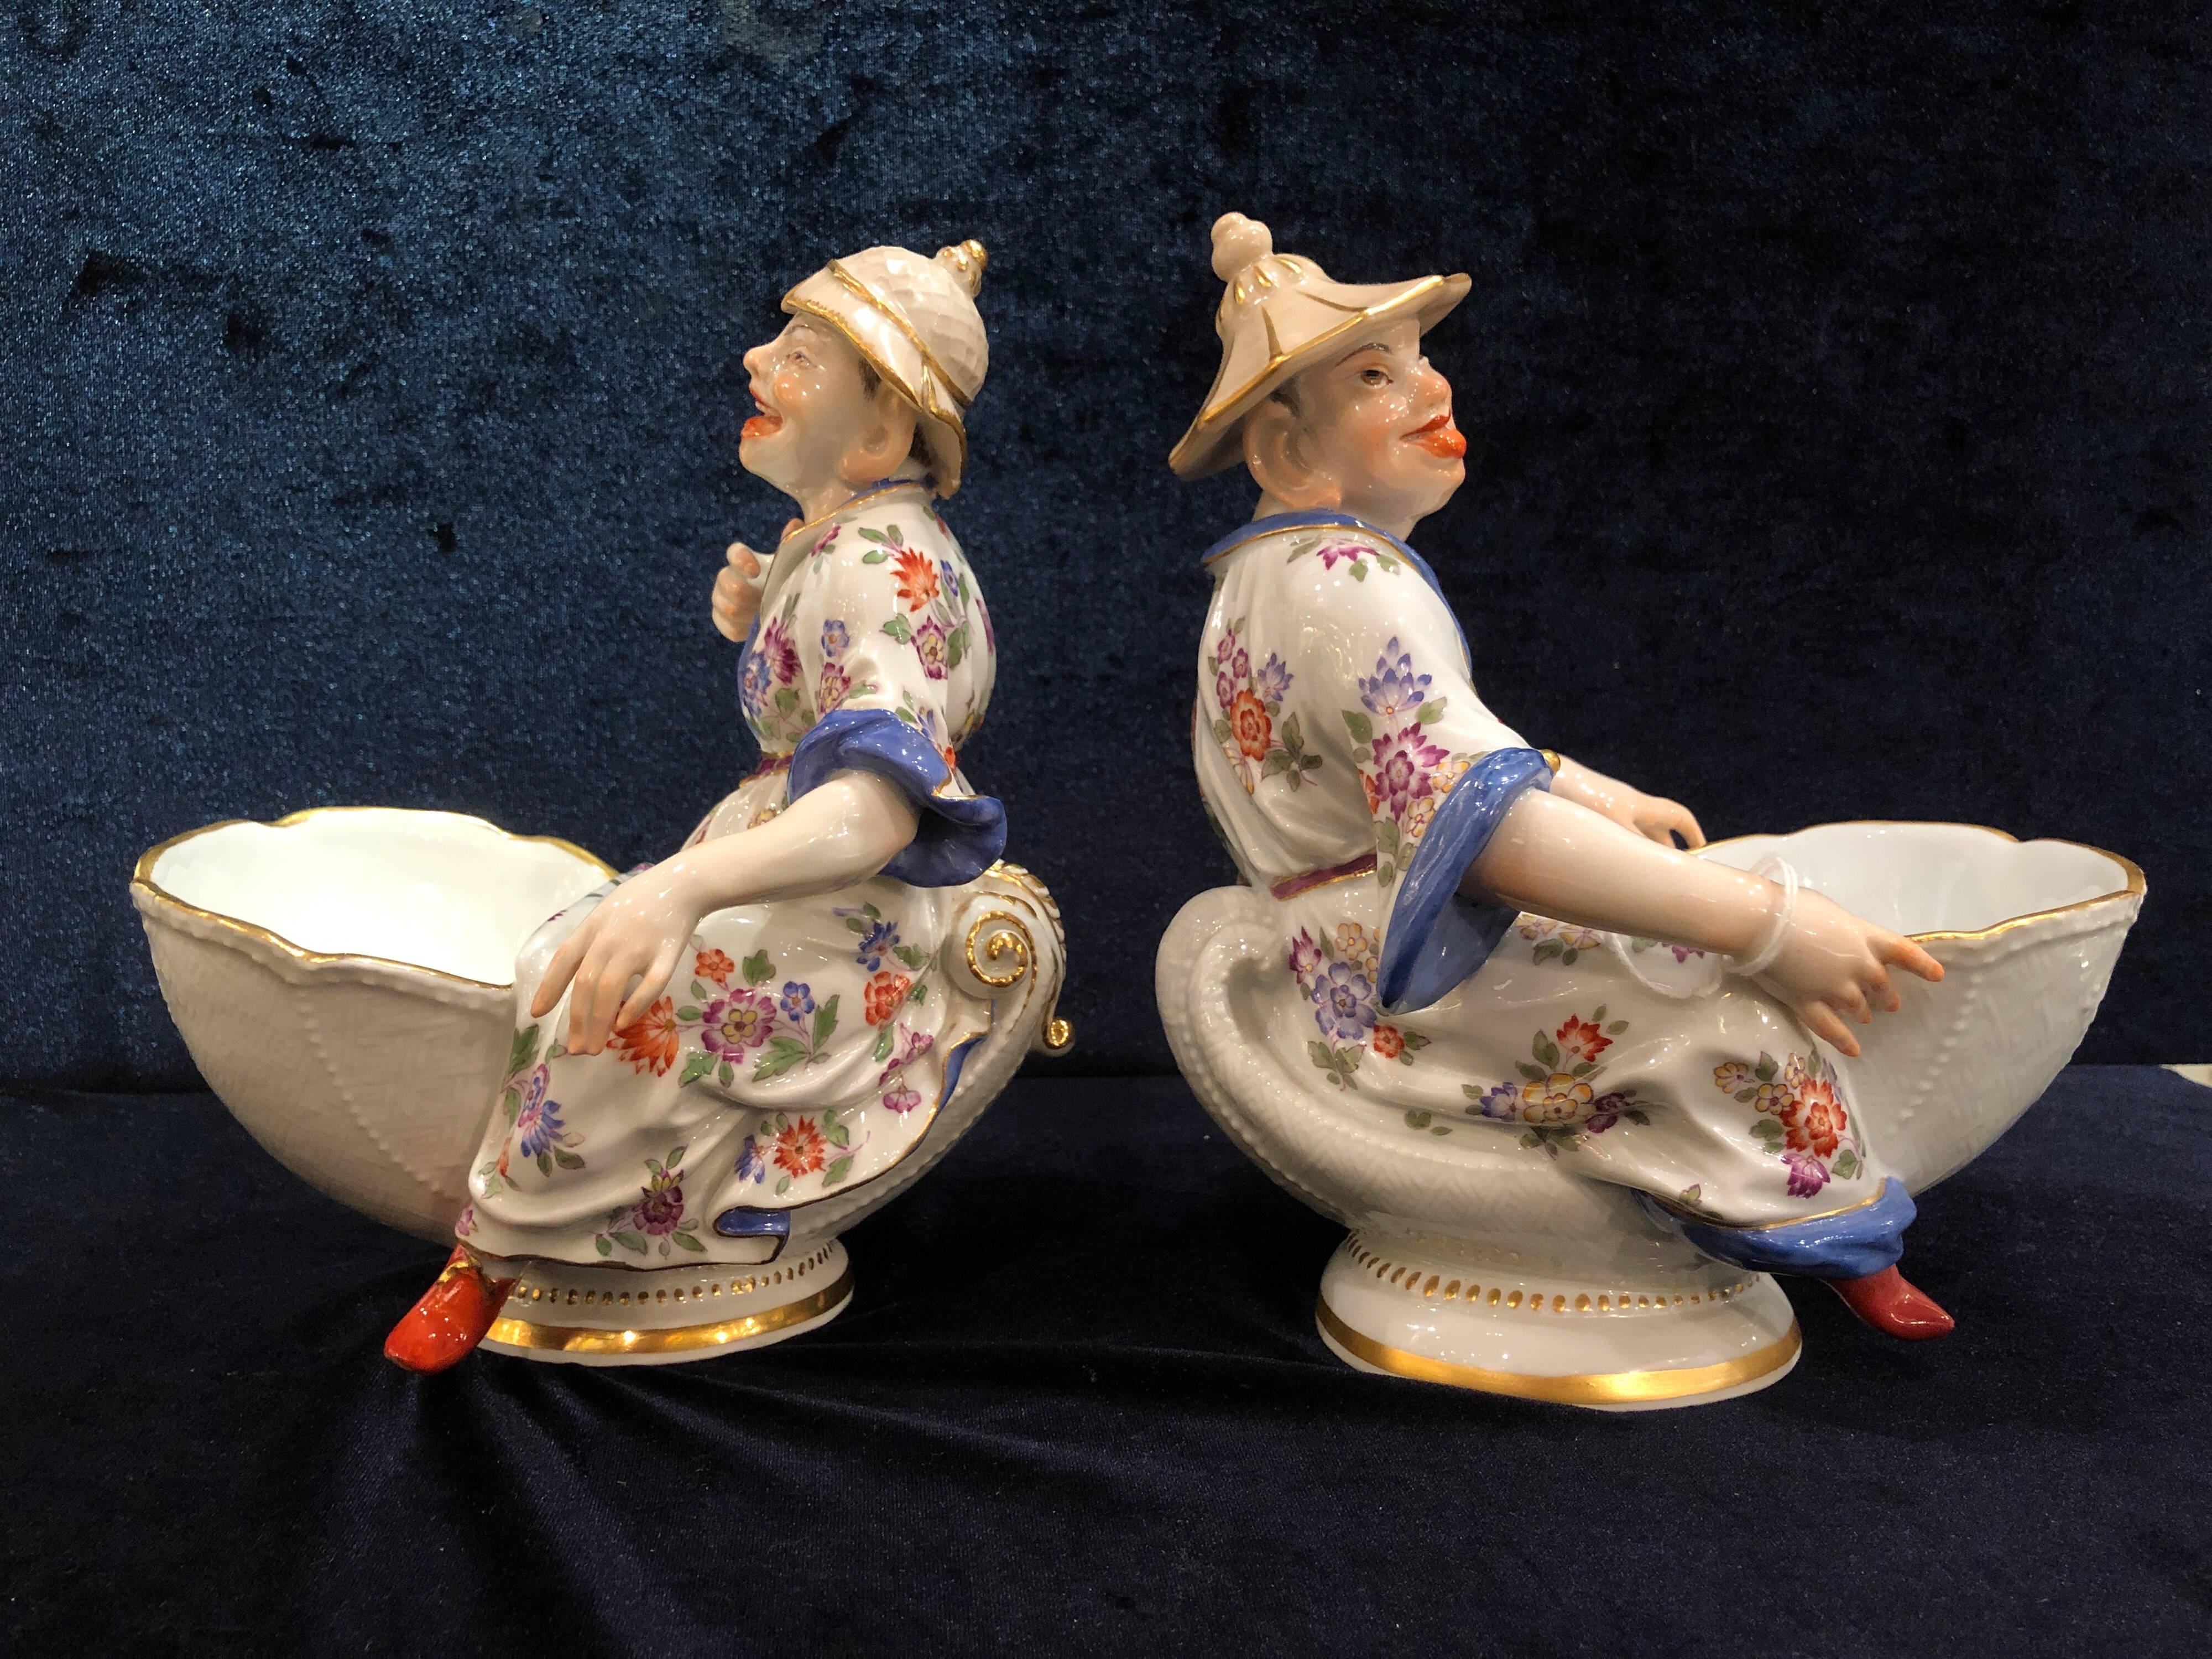 Ein feines Paar Meissener Porzellan Chinoiserie Figurensüßspeisen, nach einem Modell von J.J. Kandler
Jeweils mit einer auf einer Muschel sitzenden Malabar-Chinoiserie-Figur, die eine Schale vor sich hält, Korbgeflecht-Ritzdekor auf den Muscheln,